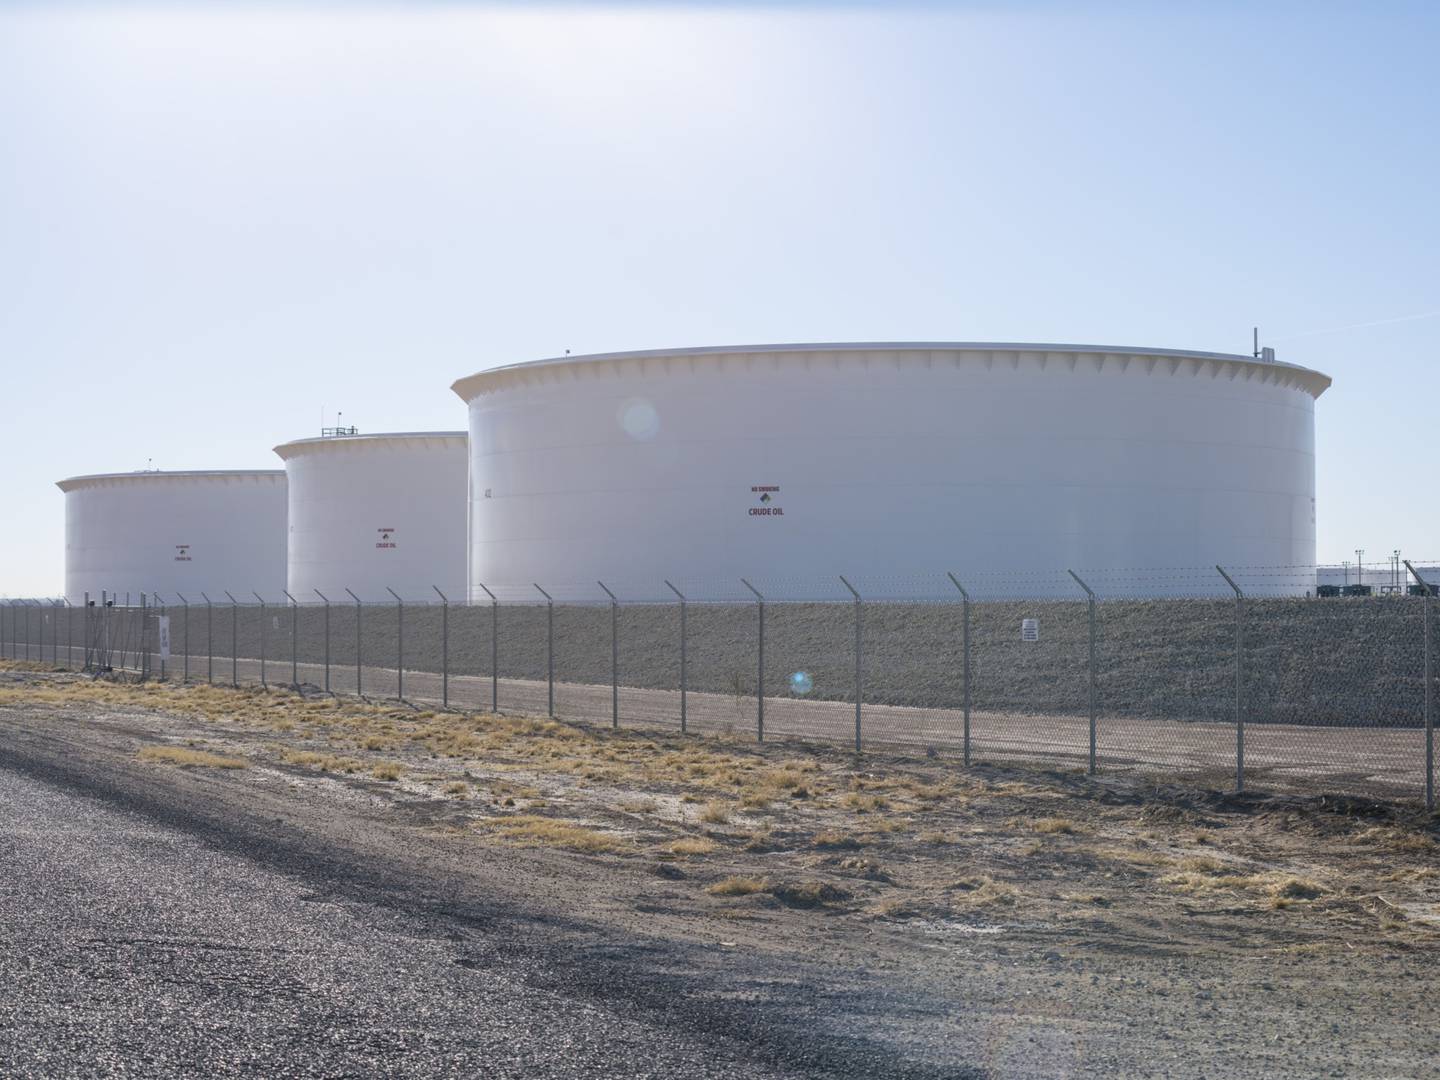 Tanques de almacenamiento de crudo cerca de Crane, Texas, Estados Unidos, el domingo 30 de enero de 2022.